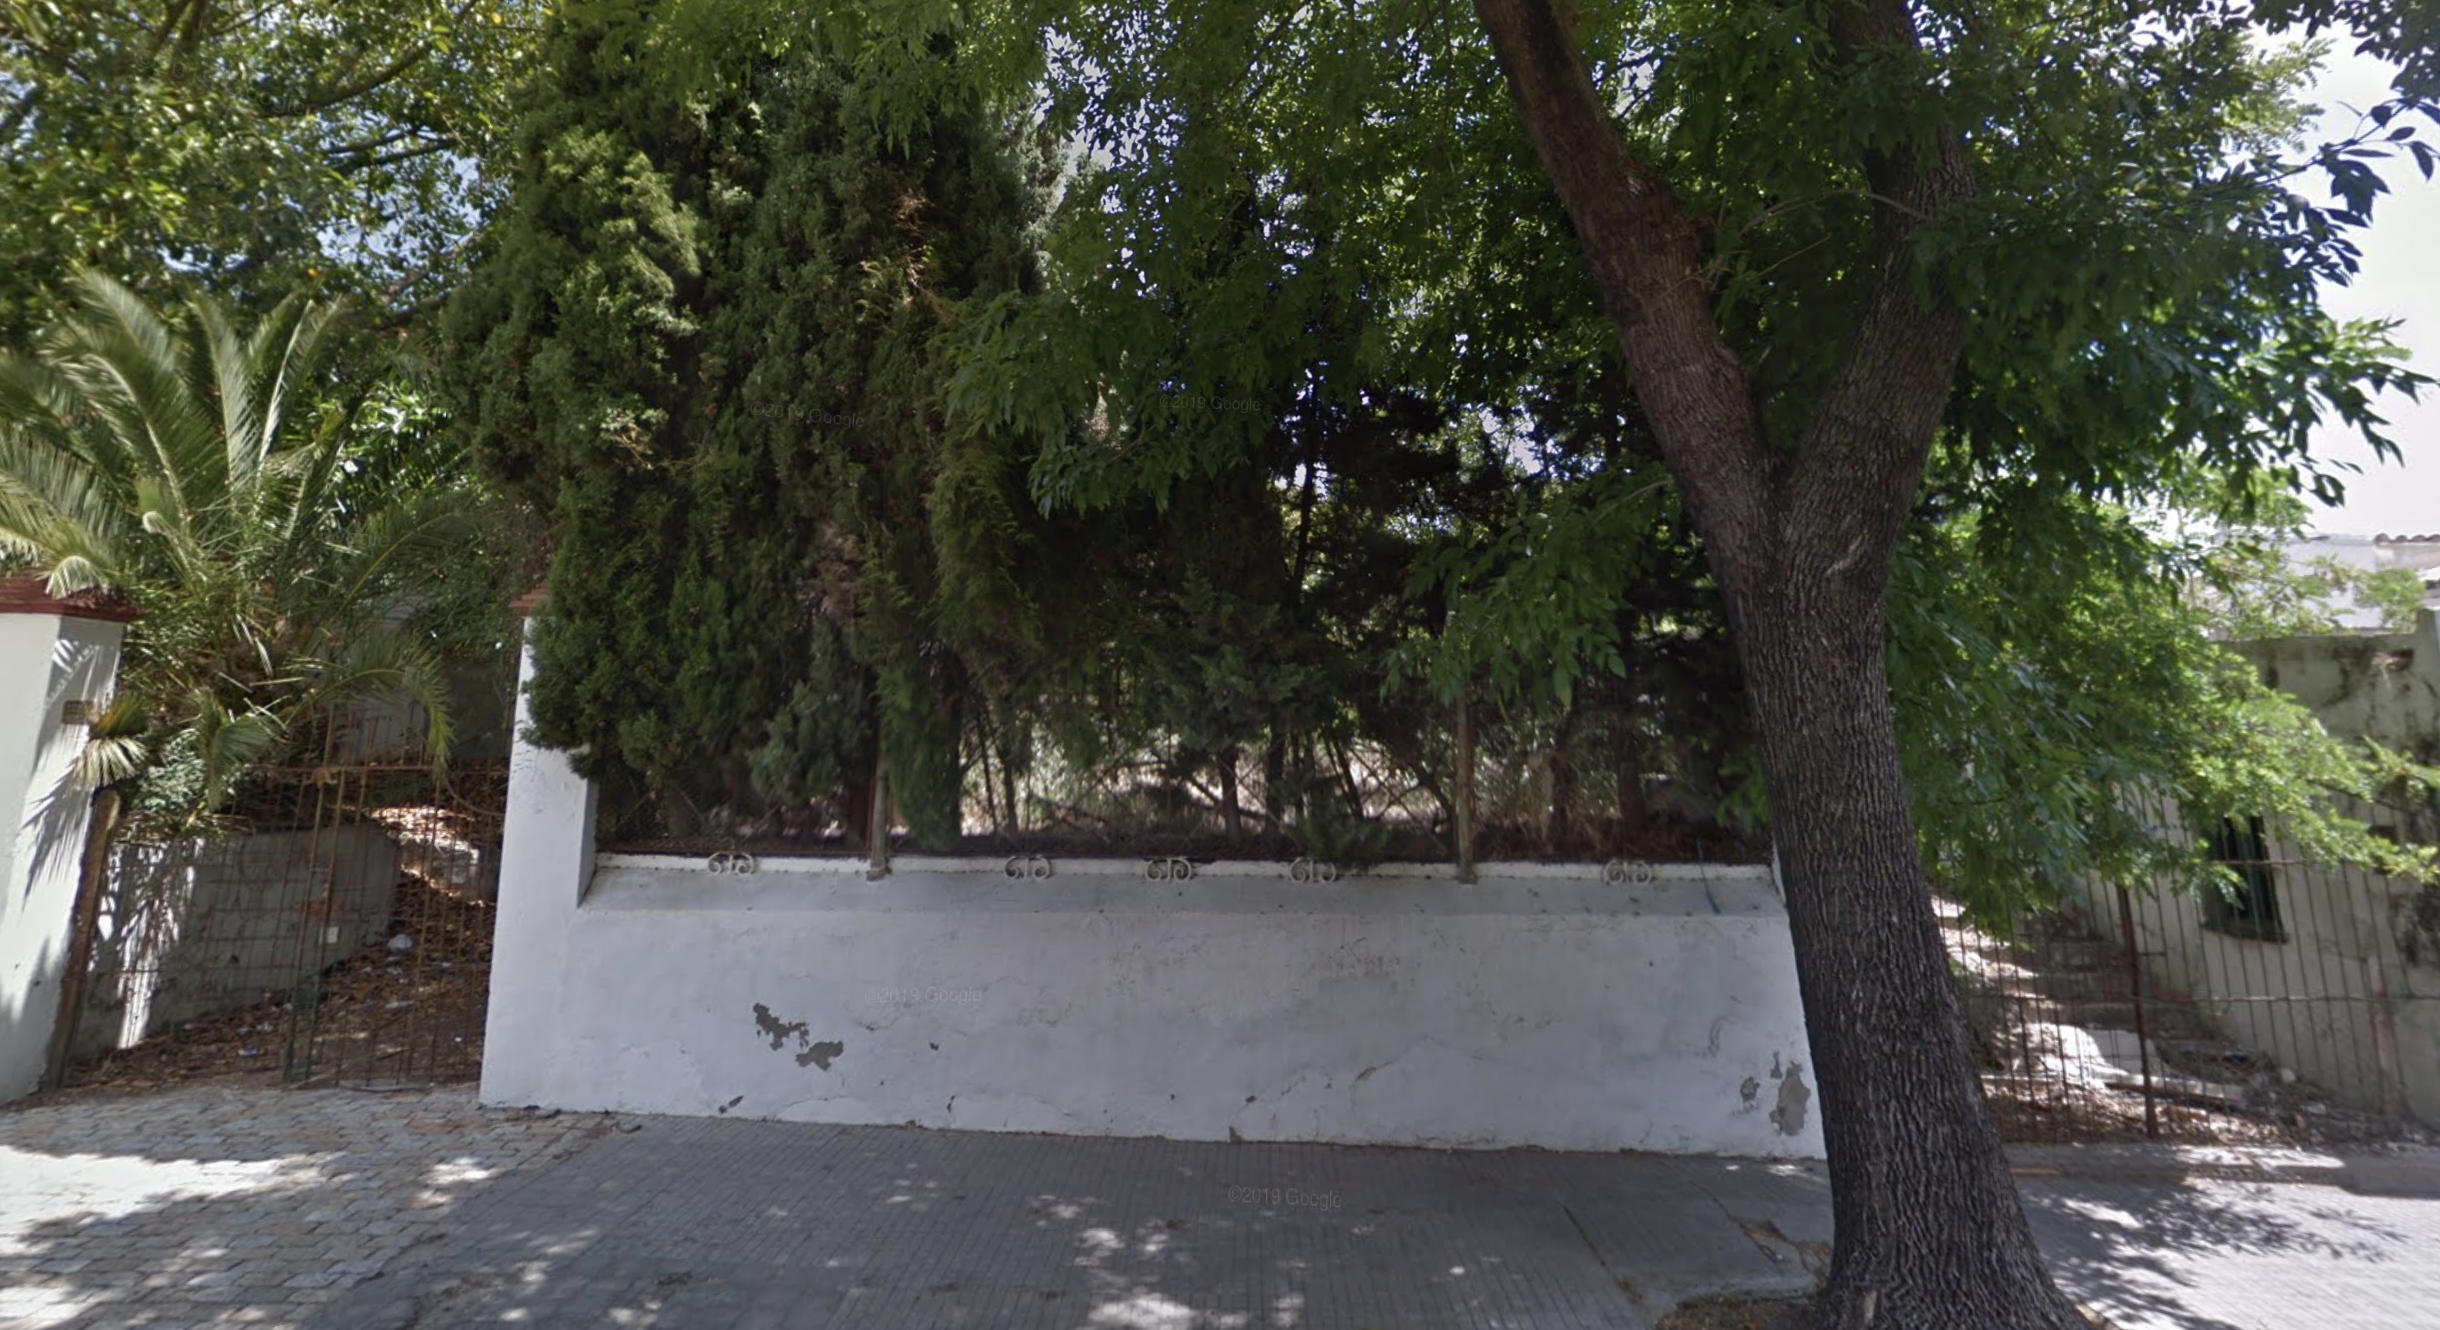 Accesos a la finca y casa-chalé de Taxdirt, 28, que fue propiedad del comandante golpista Arizón. GOOGLE MAPS